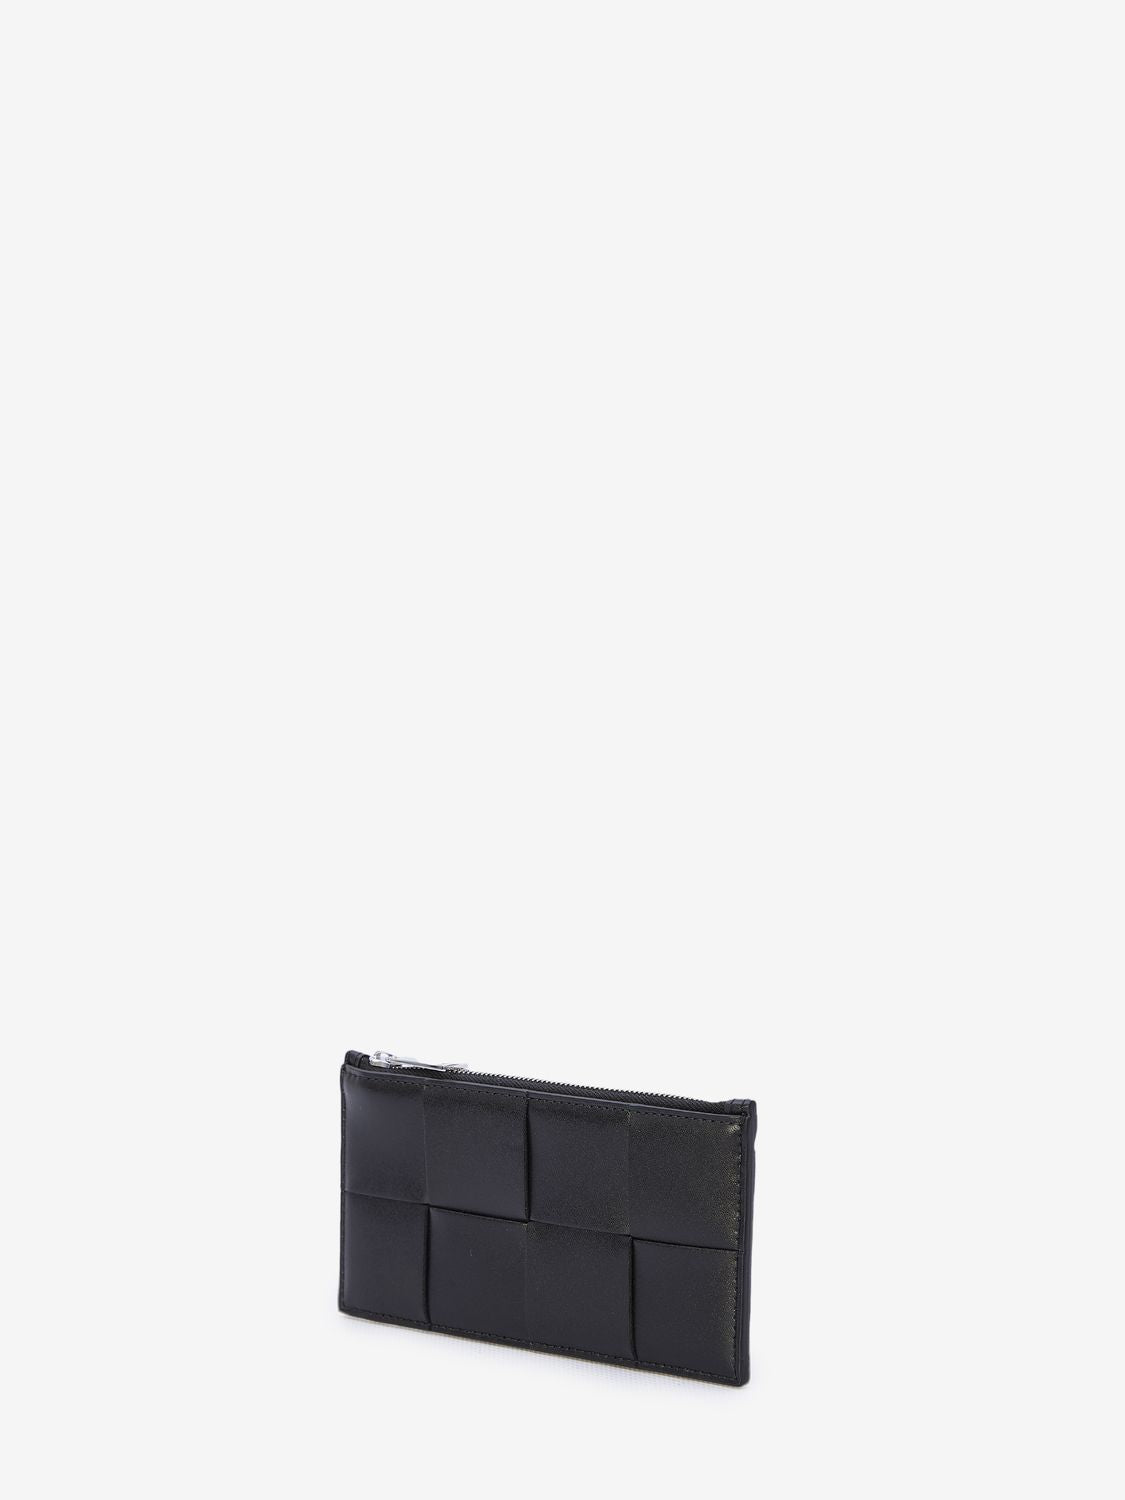 Men's Black Leather Card Holder - Intrecciato Design, Silver-Tone Hardware